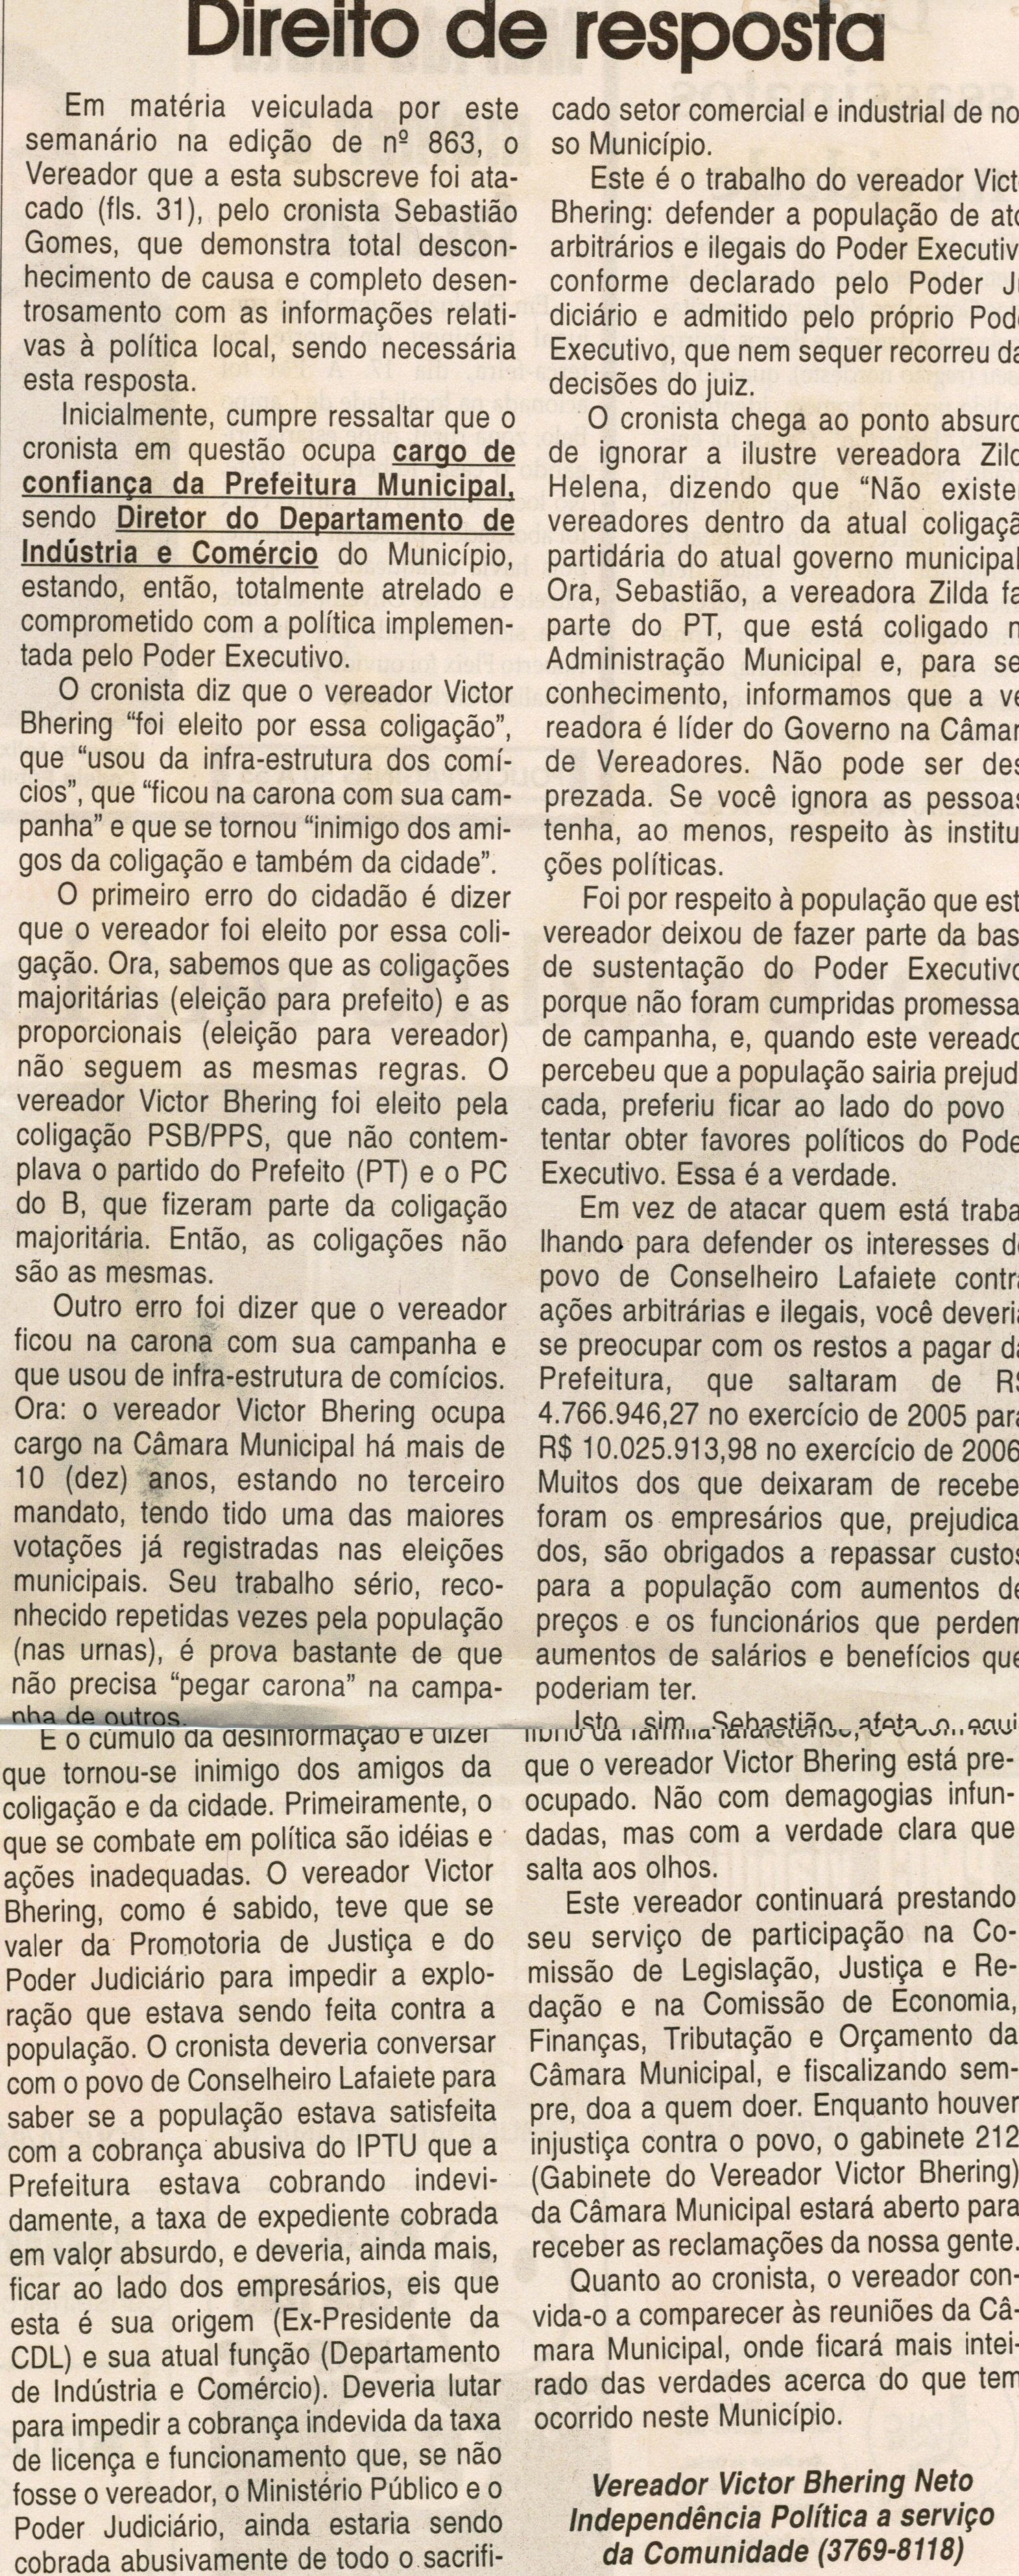 Direito de resposta. Jornal Correio de Minas, Conselheiro Lafaiete, 21 jul. 2007, 864ª ed., p.02.